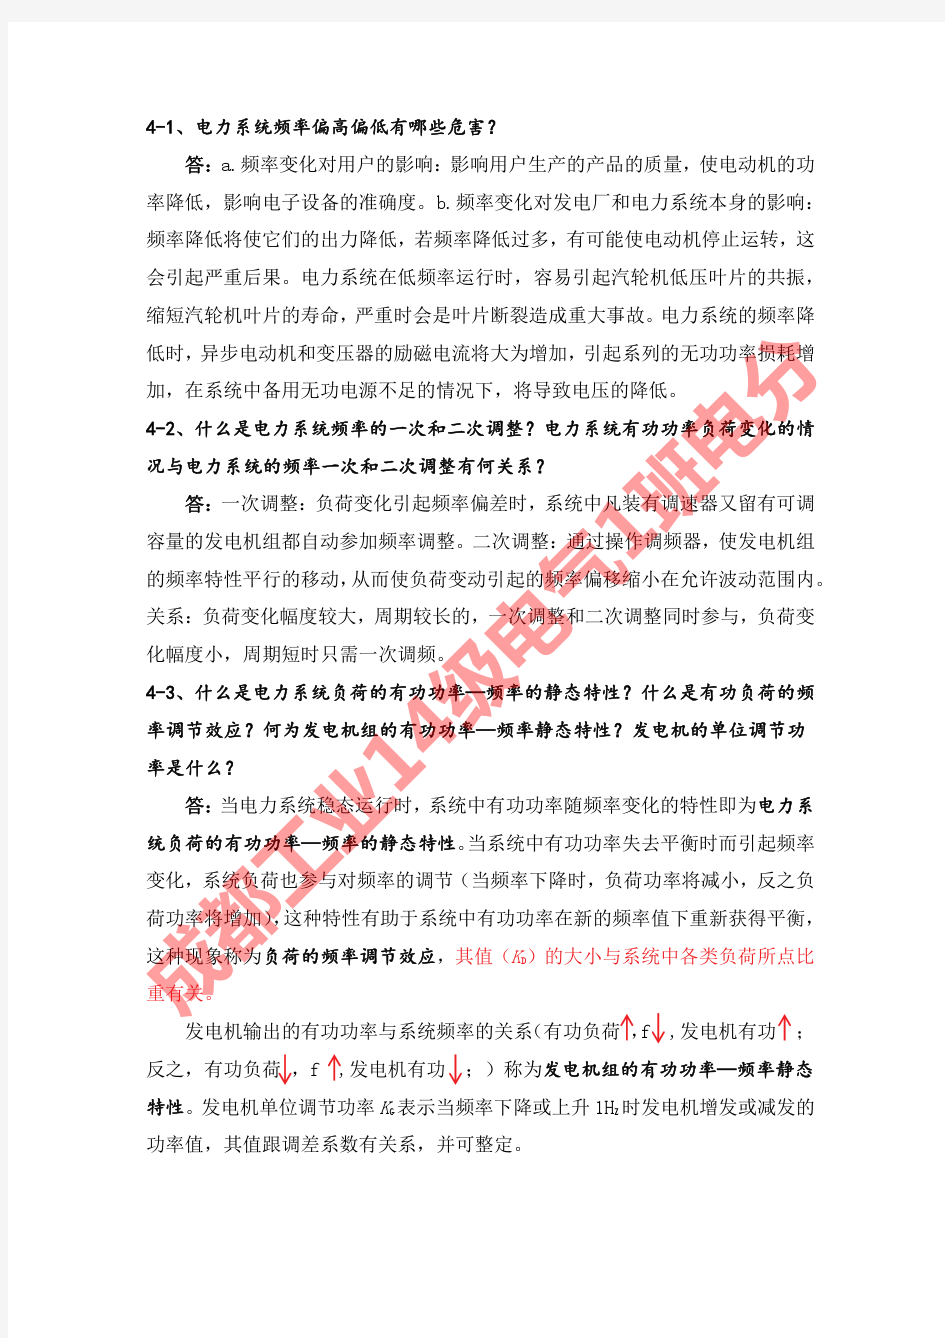 刘天琪电力系统分析理论第4章答案完整版